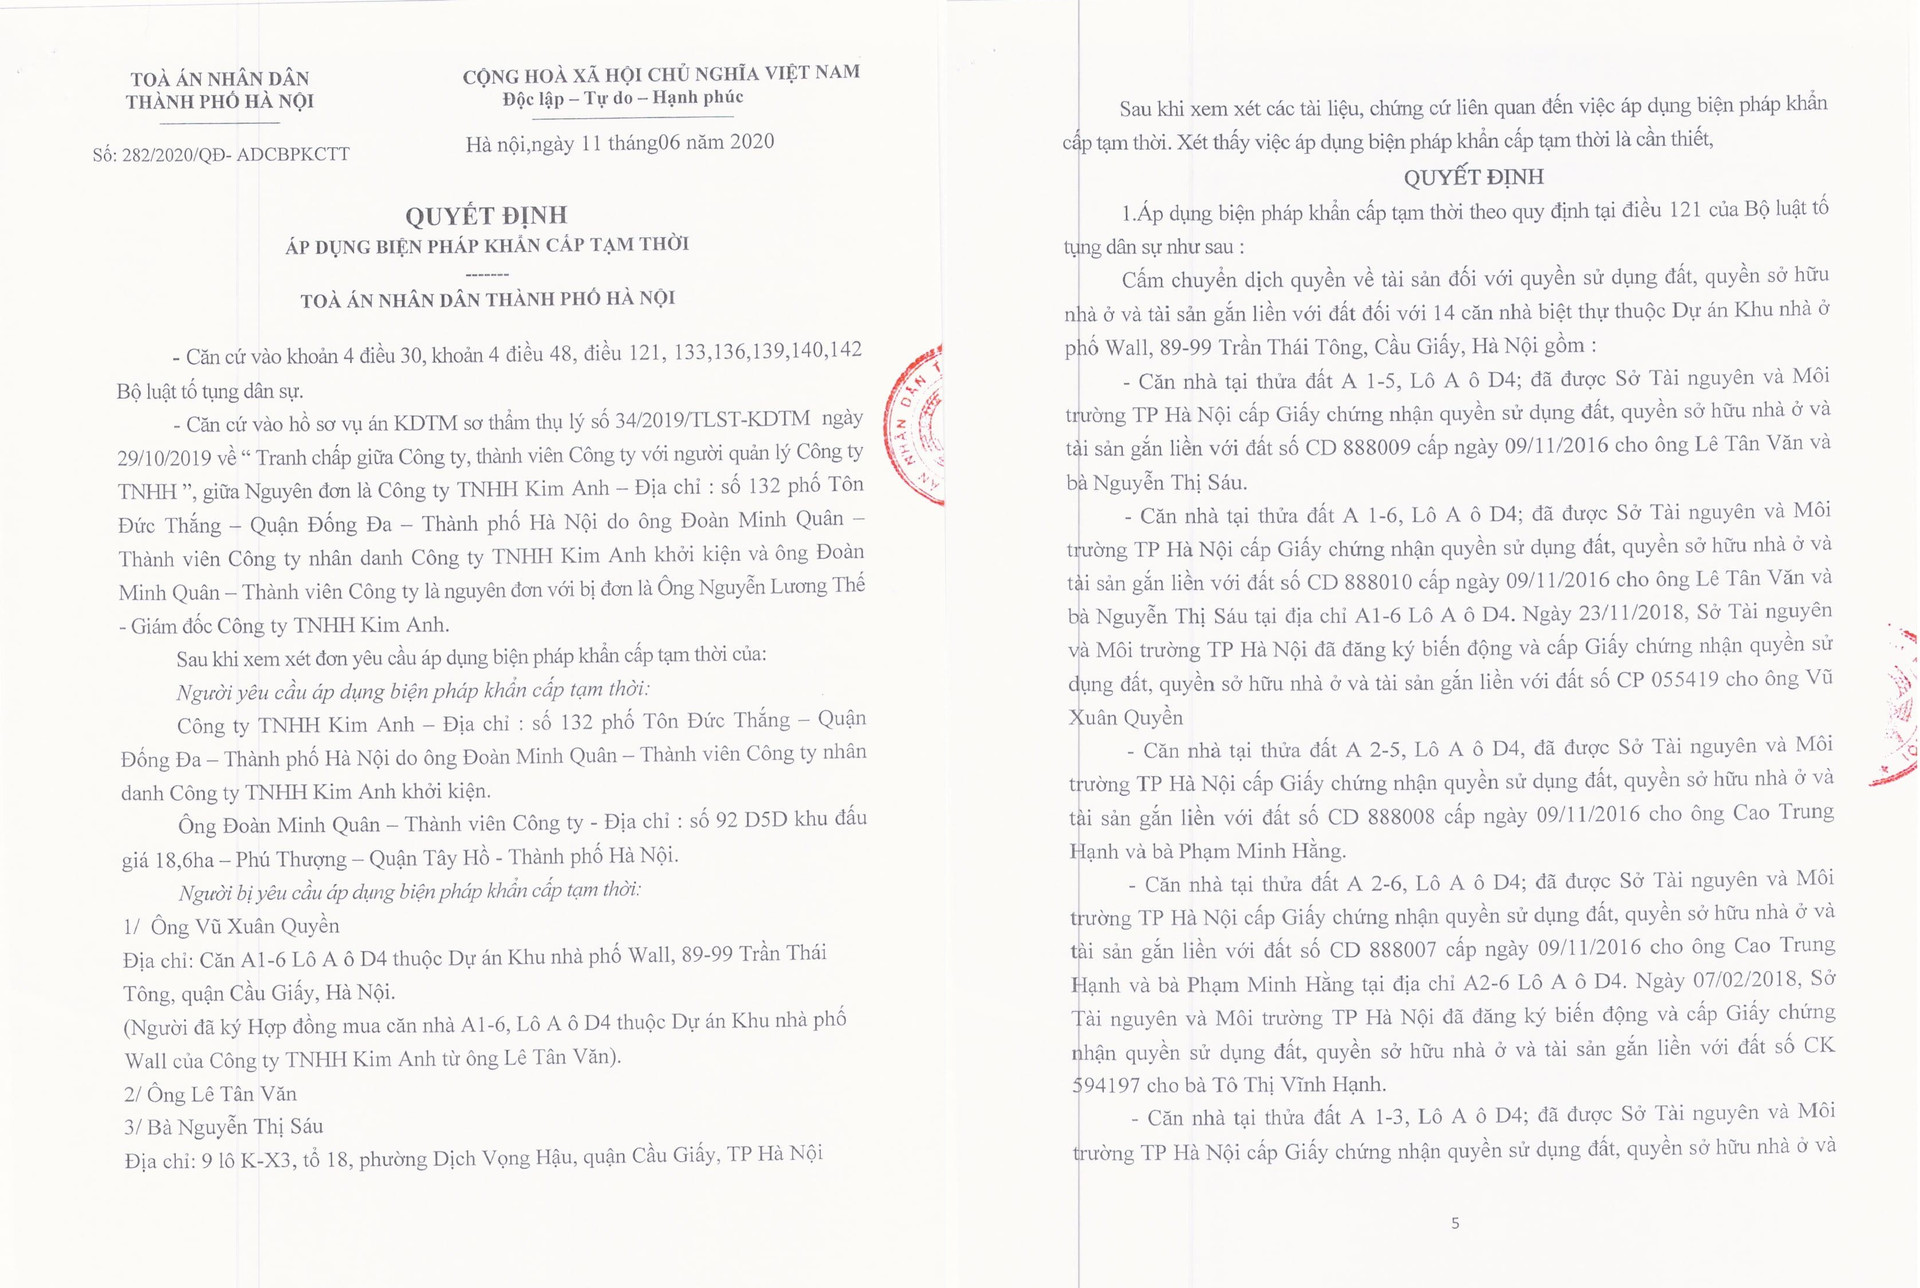 Vụ việc tranh chấp tại Công ty Kim Anh: Tòa “cấm dịch chuyển” 14 căn nhà tại dự án Phố Wall